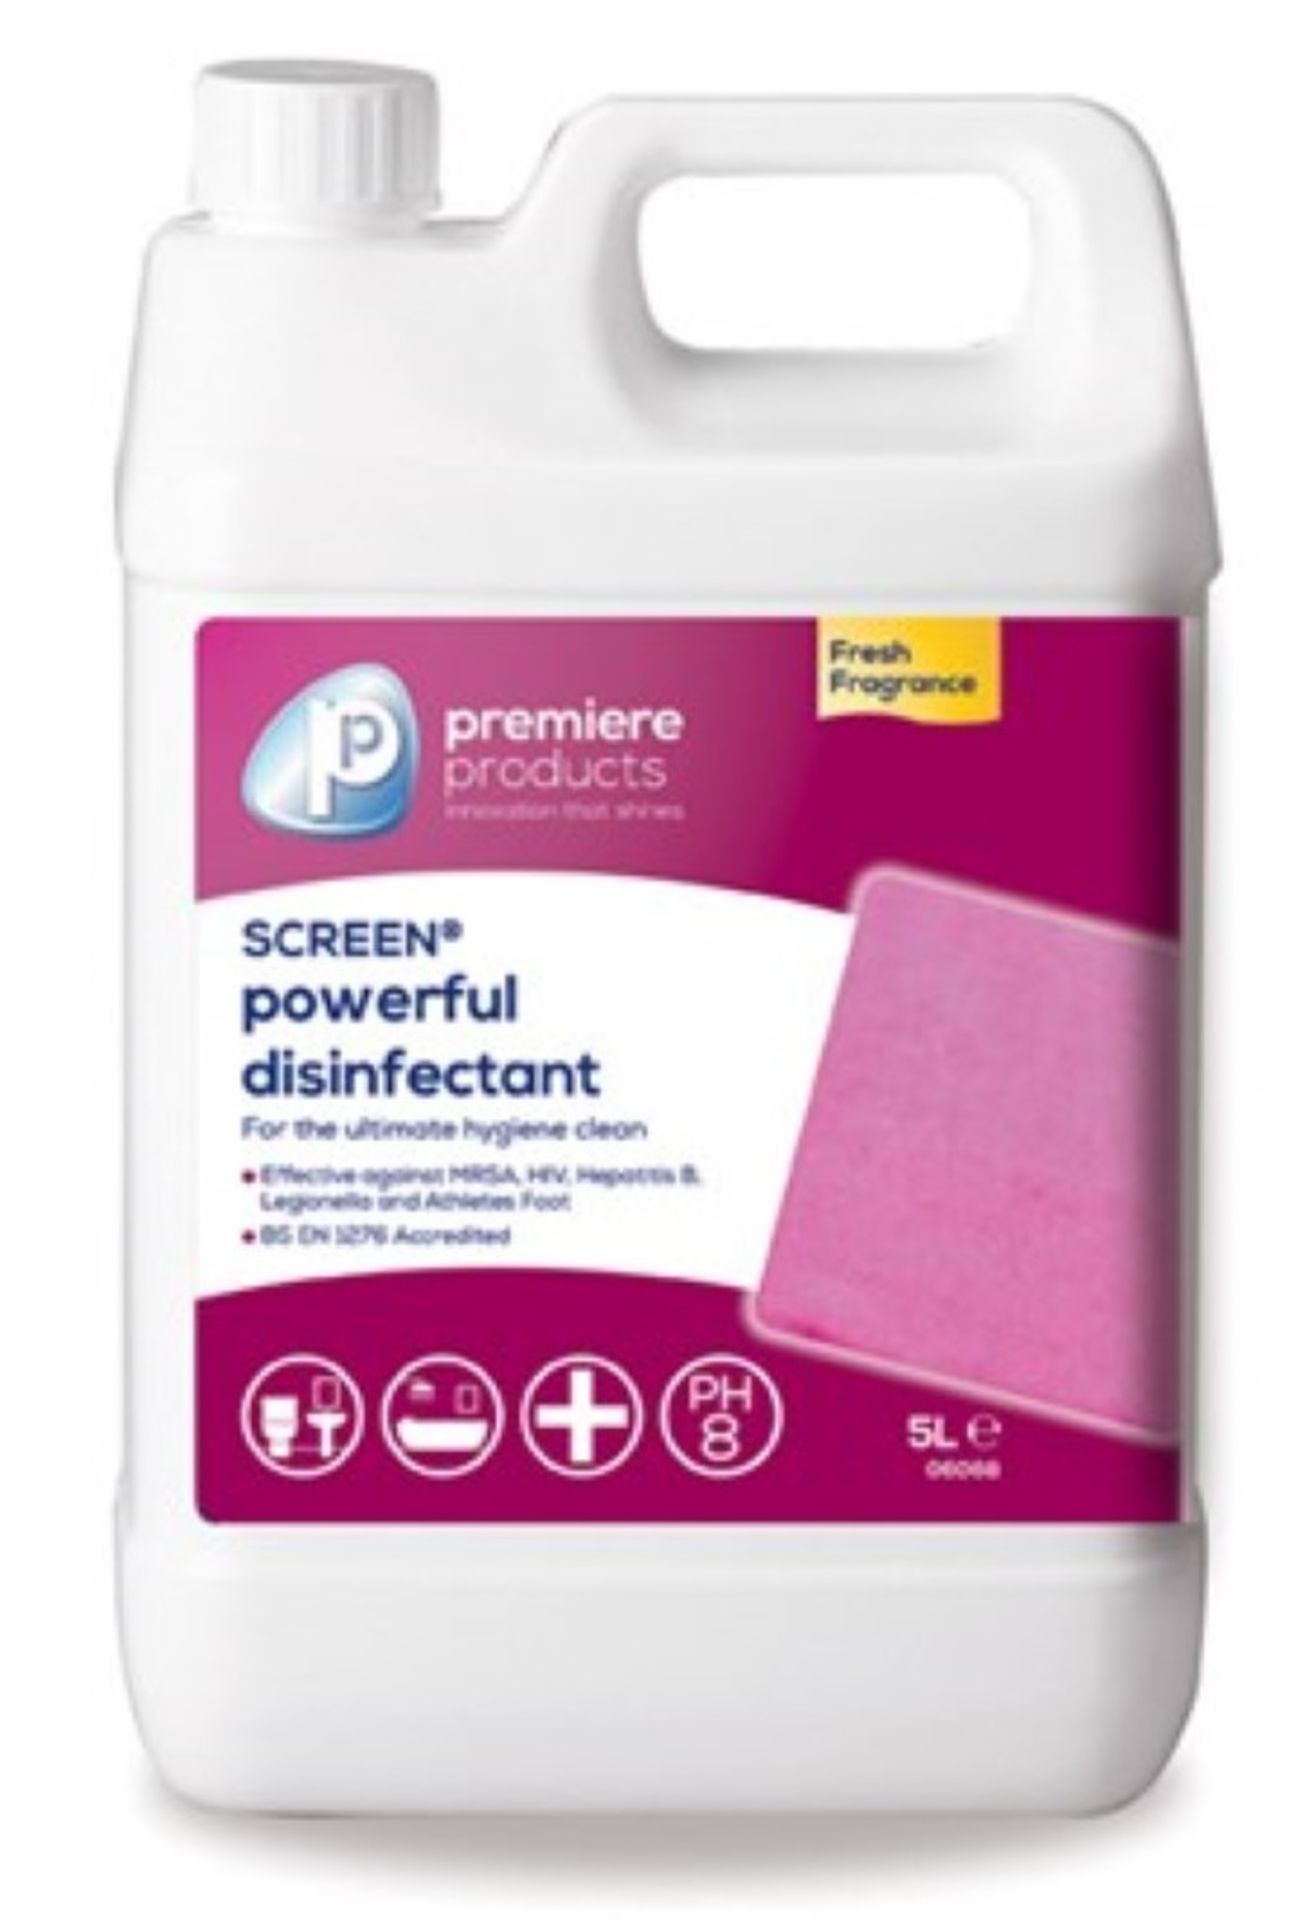 10 x Premiere 5 Litre Screen Virucidal Disinfectant - Premiere Products - Includes 10 x 5 Litre Cont